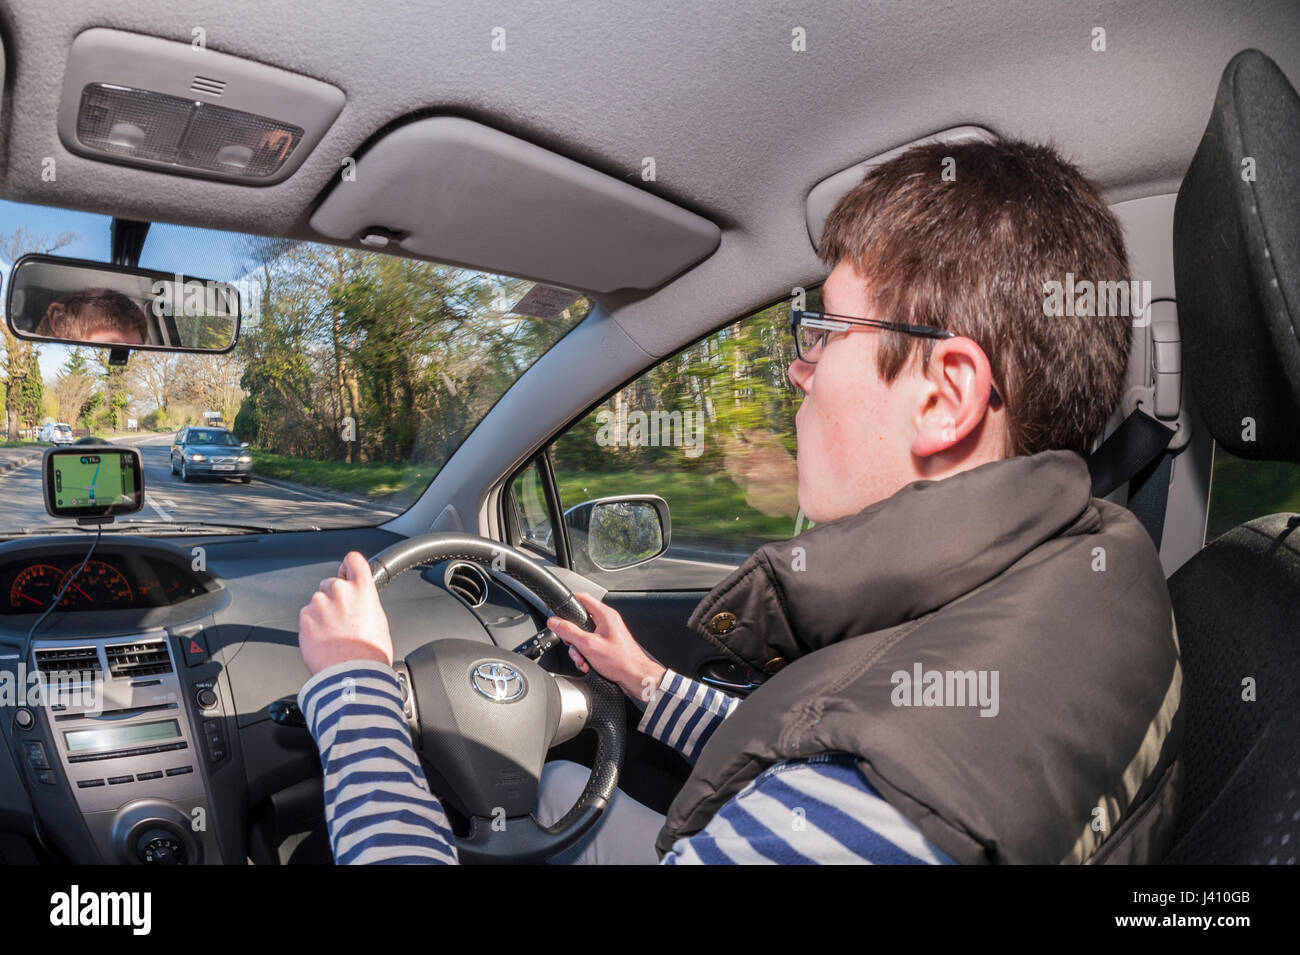 Un modèle publié garçon de 17 ans apprendre à conduire au Royaume-Uni Banque D'Images